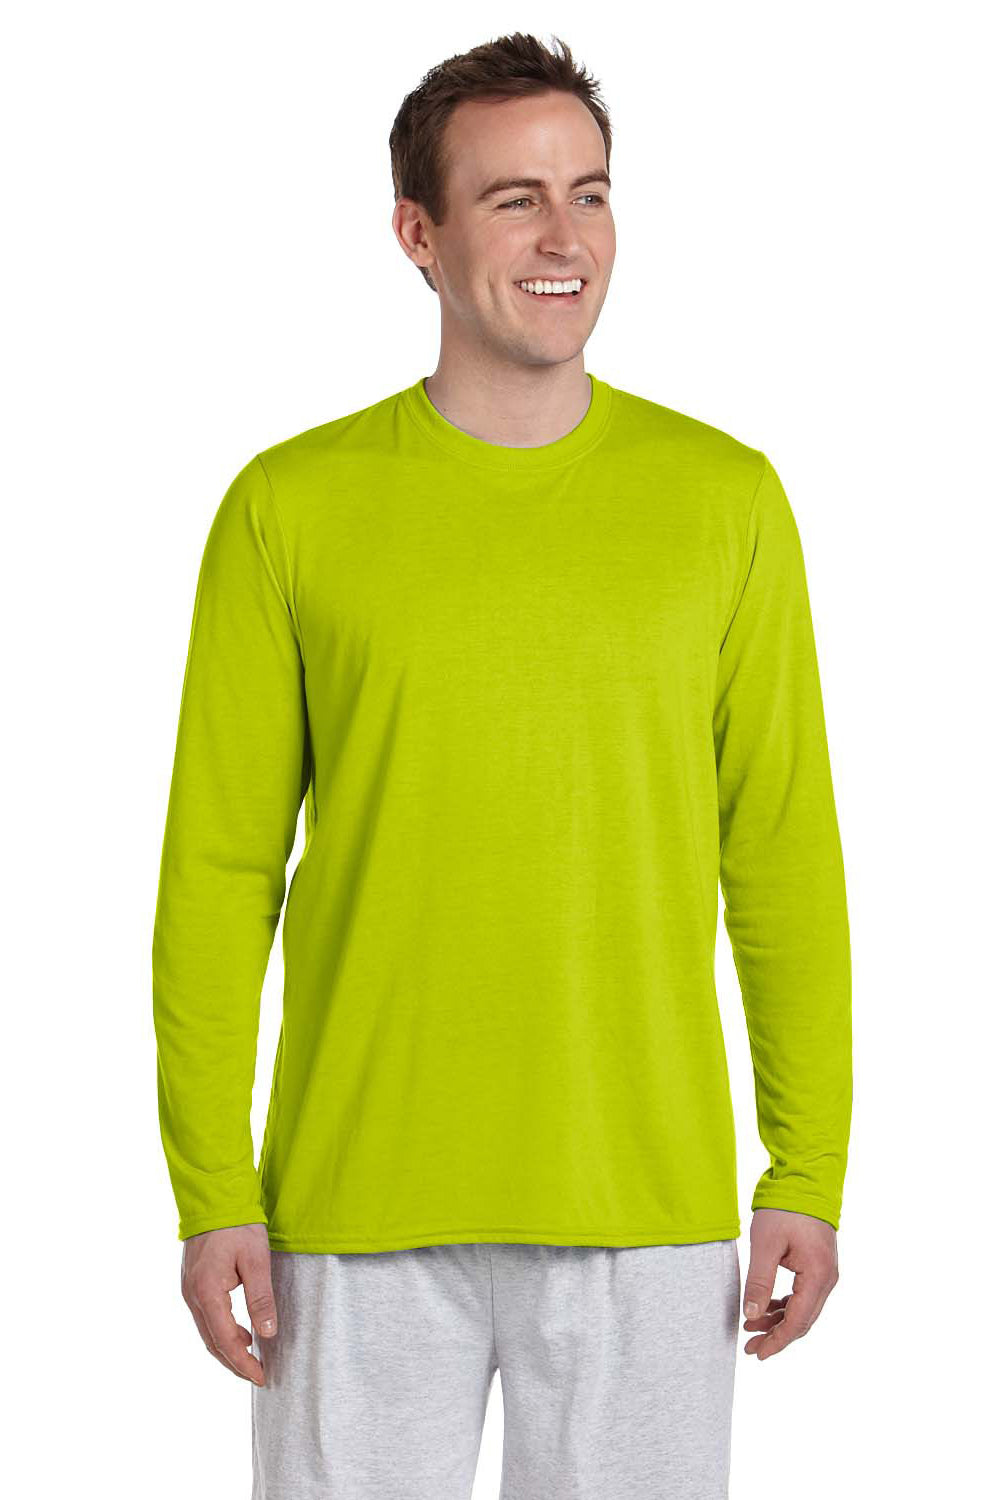 Gildan G424 Mens Performance Jersey Moisture Wicking Long Sleeve Crewneck T-Shirt Safety Green Front